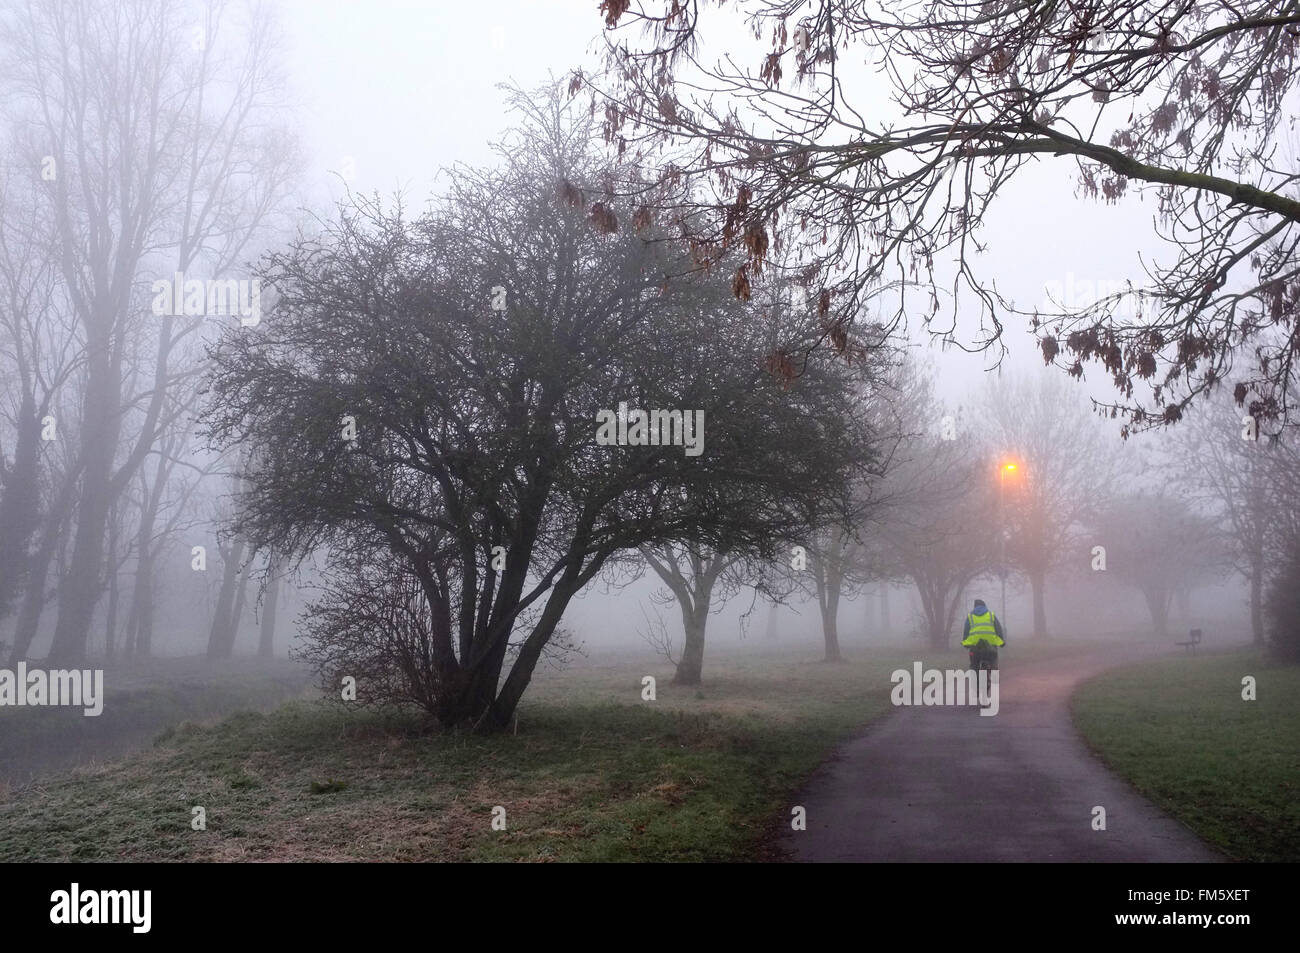 Escursioni in bicicletta sul sentiero nel parco su una mattinata nebbiosa a Luton, Bedfordshire Foto Stock